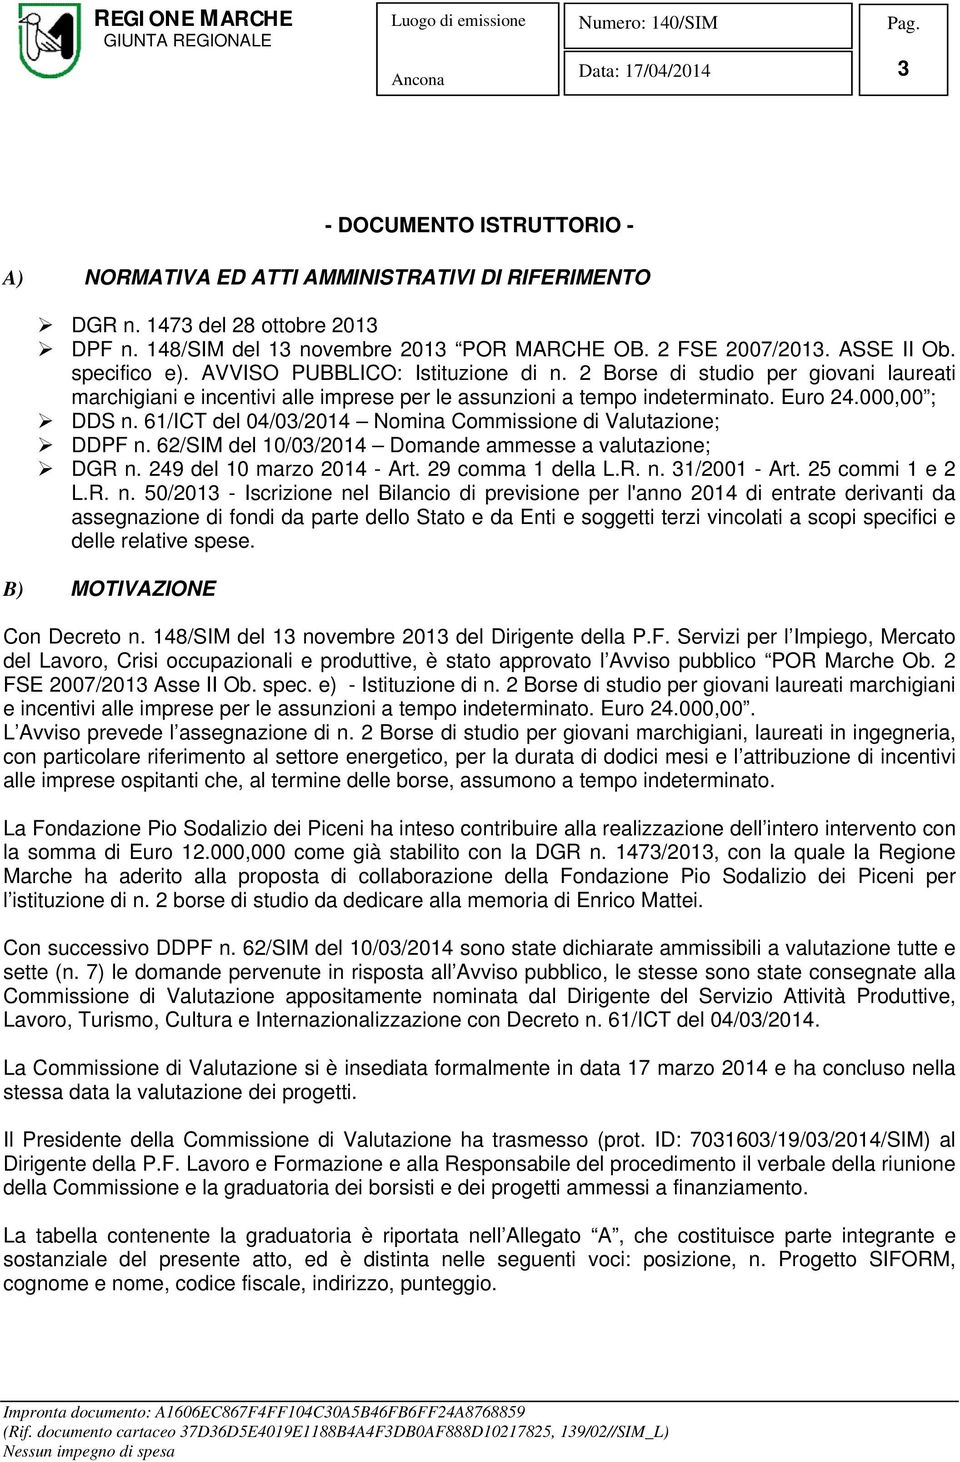 61/ICT del 04/03/2014 Nomina Commissione di Valutazione; DDPF n. 62/SIM del 10/03/2014 Domande ammesse a valutazione; DGR n. 249 del 10 marzo 2014 - Art. 29 comma 1 della L.R. n. 31/2001 - Art.